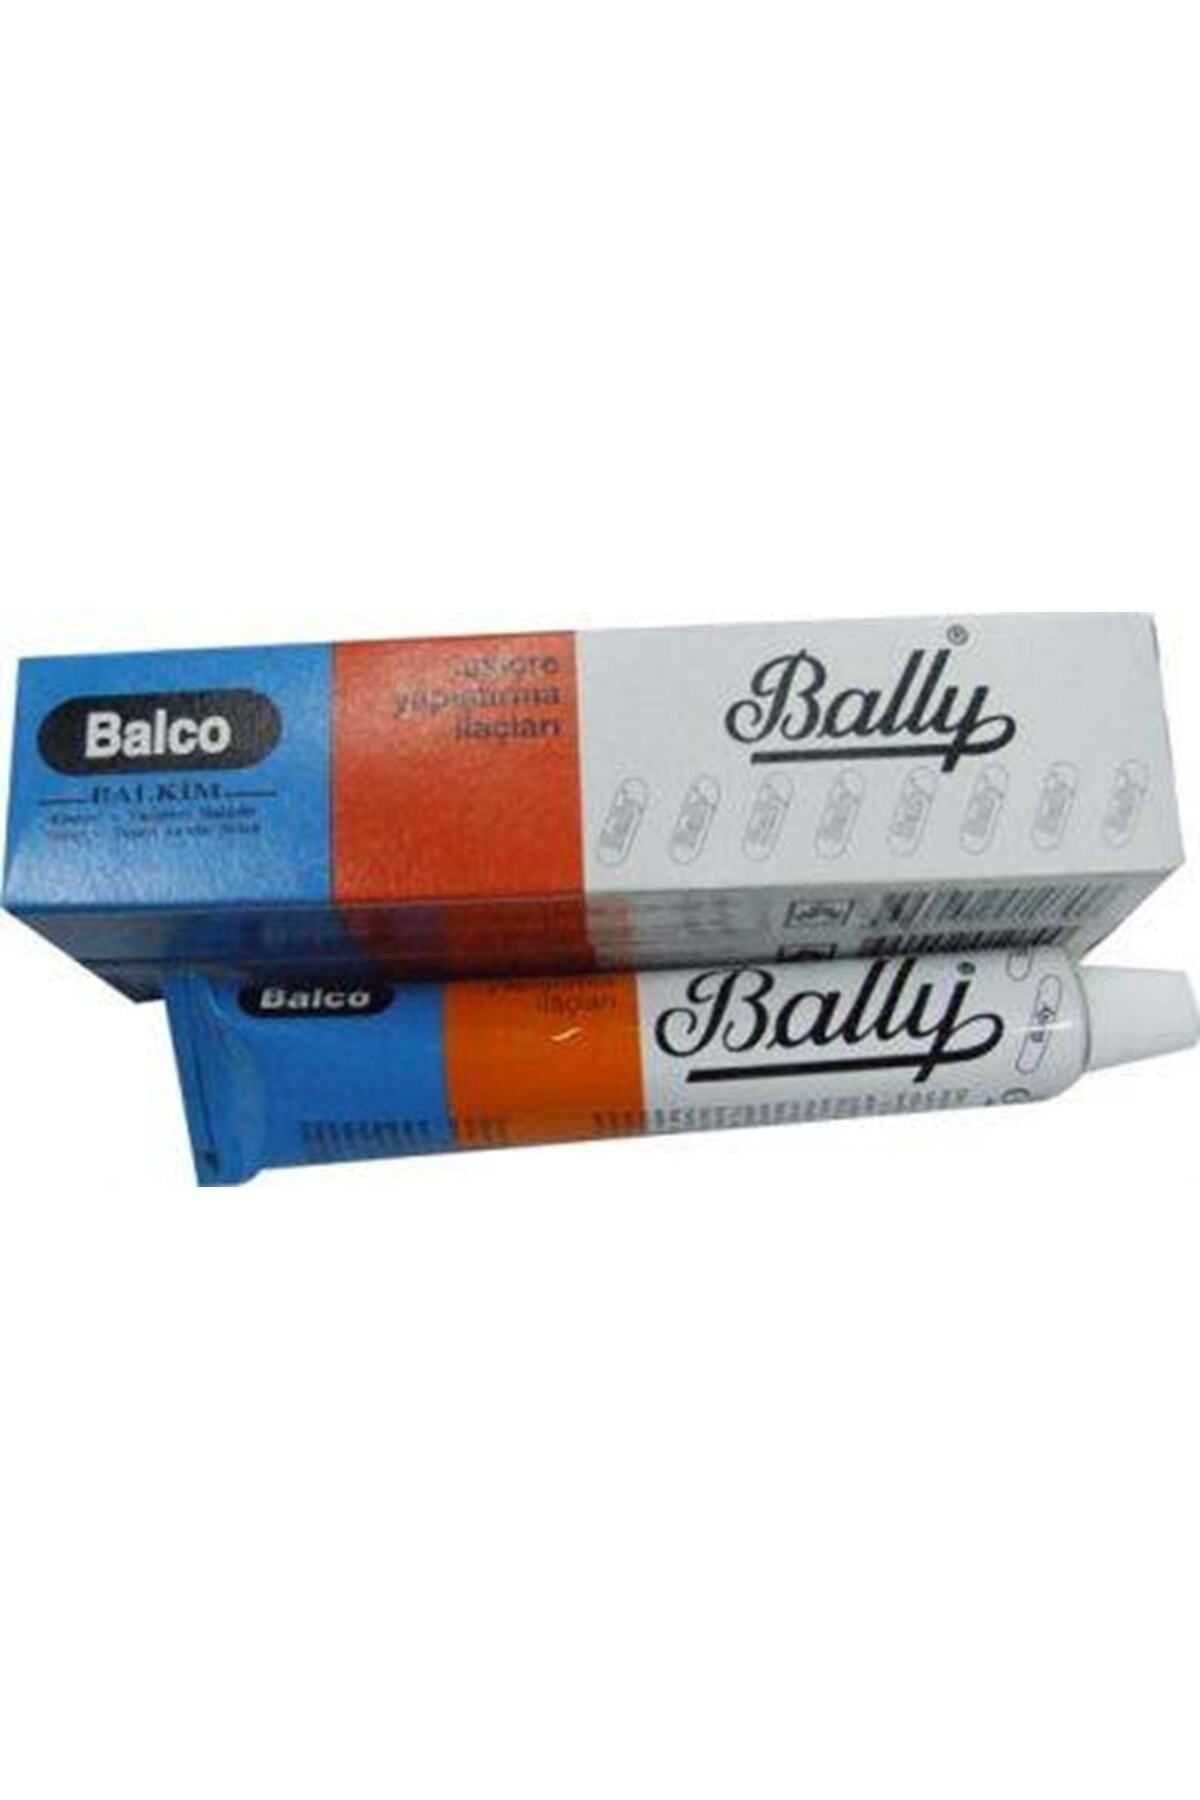 Bally 150 gr Balco